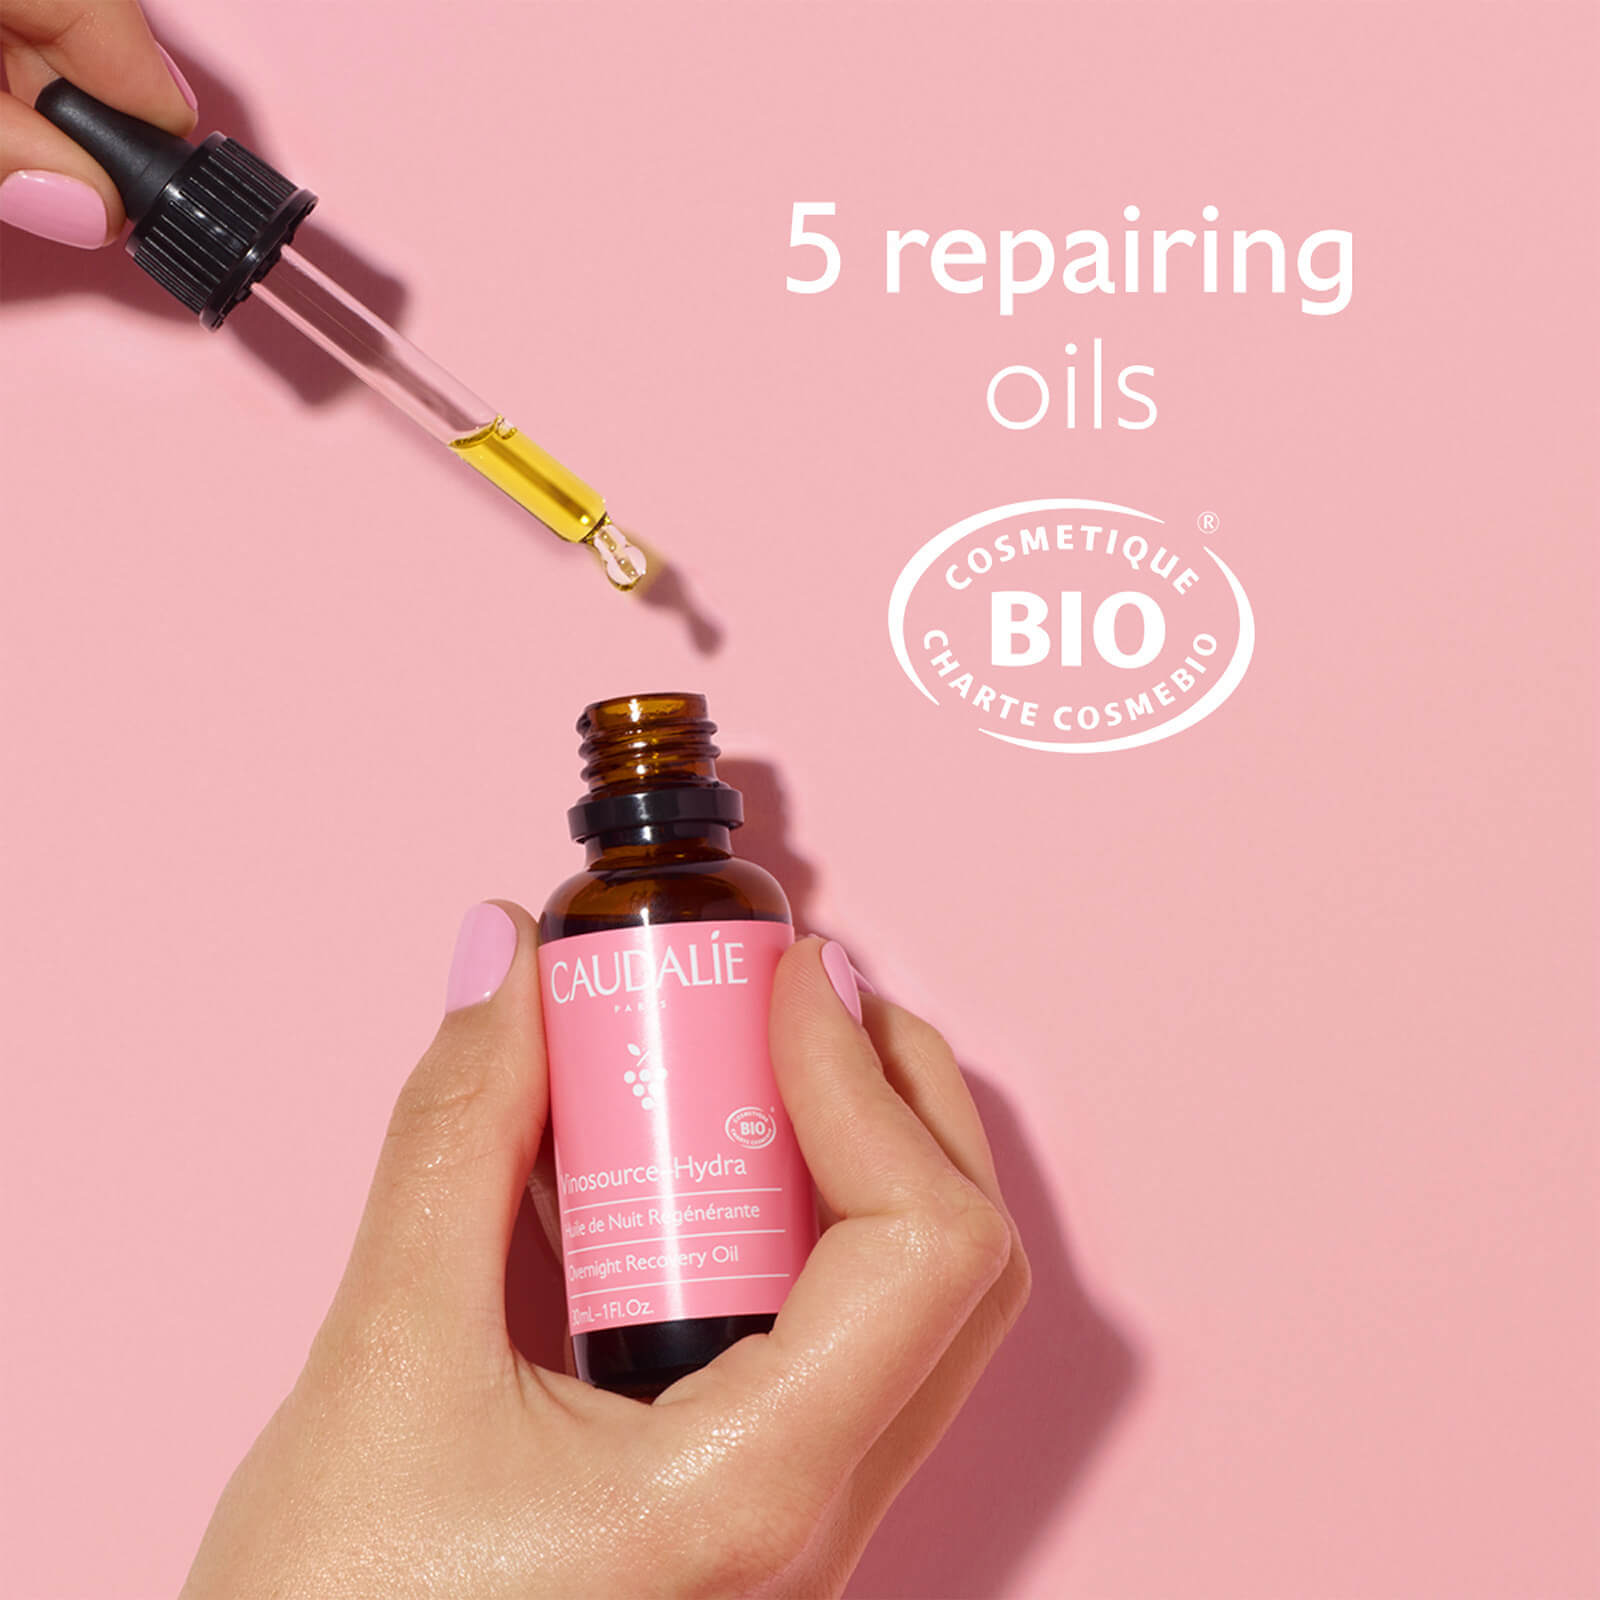 Image 1 -5 repairing oils